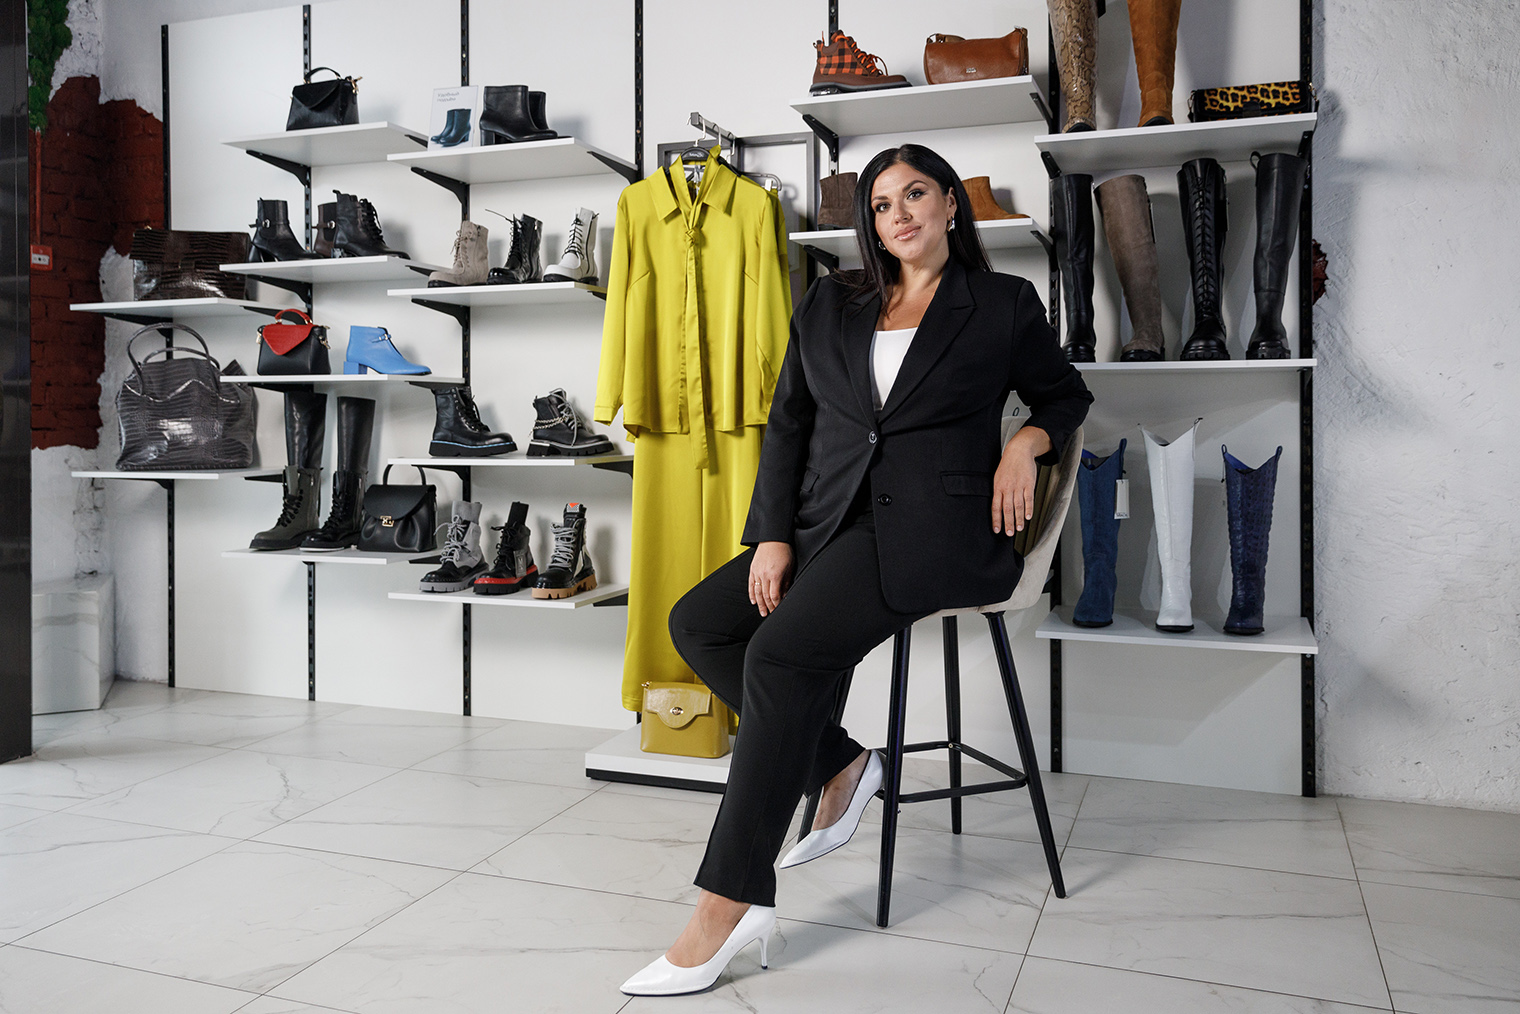 Как достичь успеха в сфере розничной торговли модной одеждой: 6 рекомендаций владелицы магазинов "Моностиль"